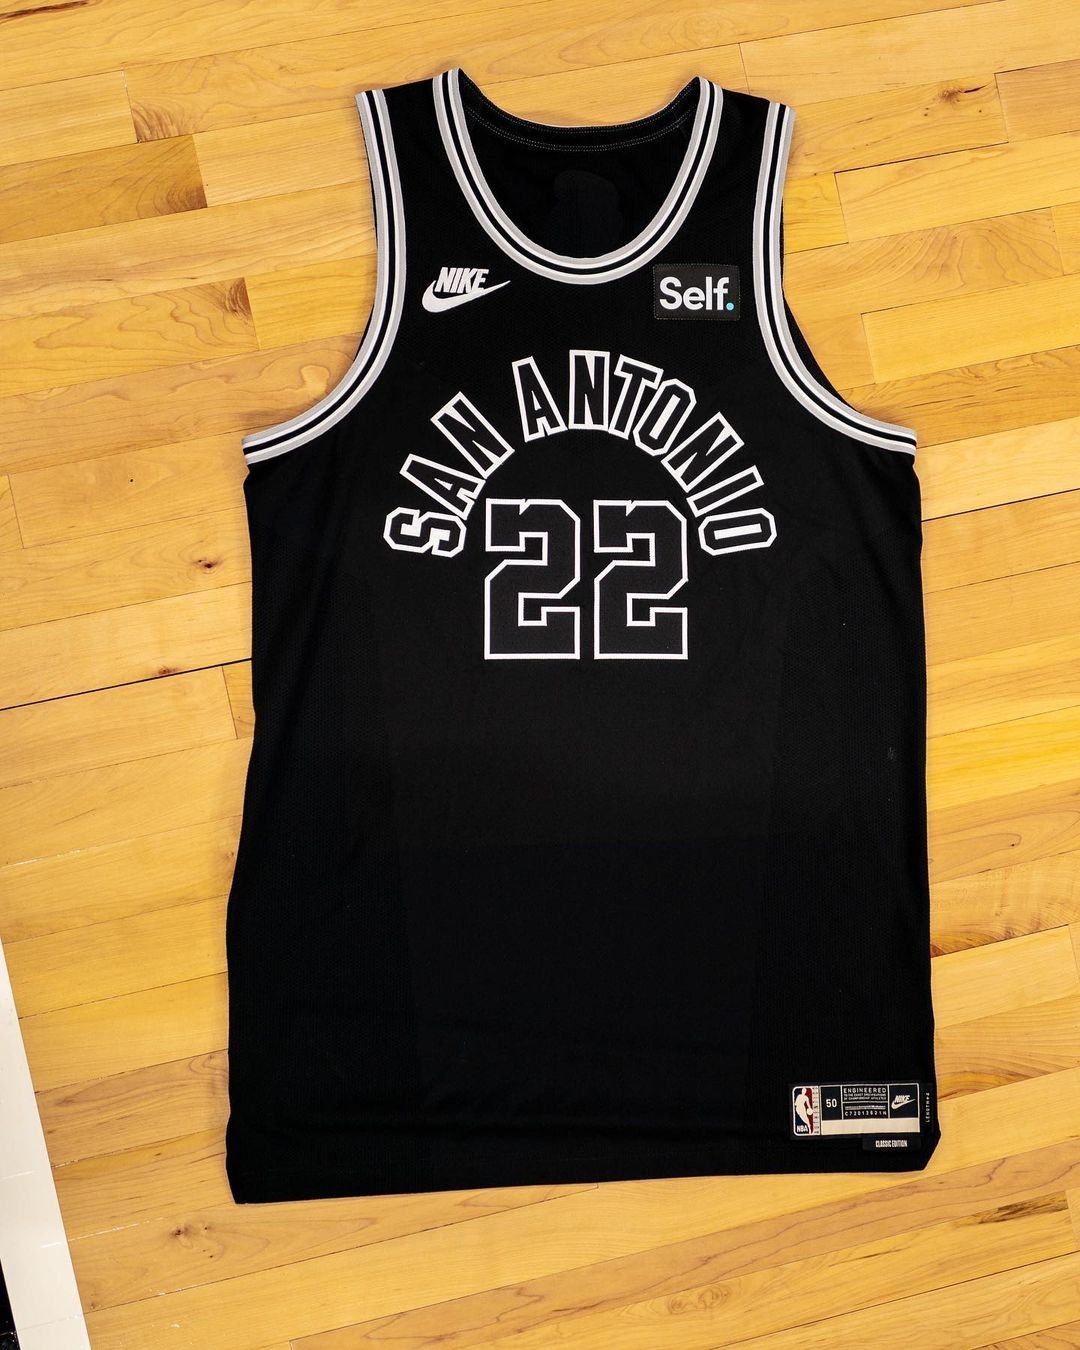 Novo uniforme Classic Edition do San Antonio Spurs (Foto: Reprodução/Instagram)